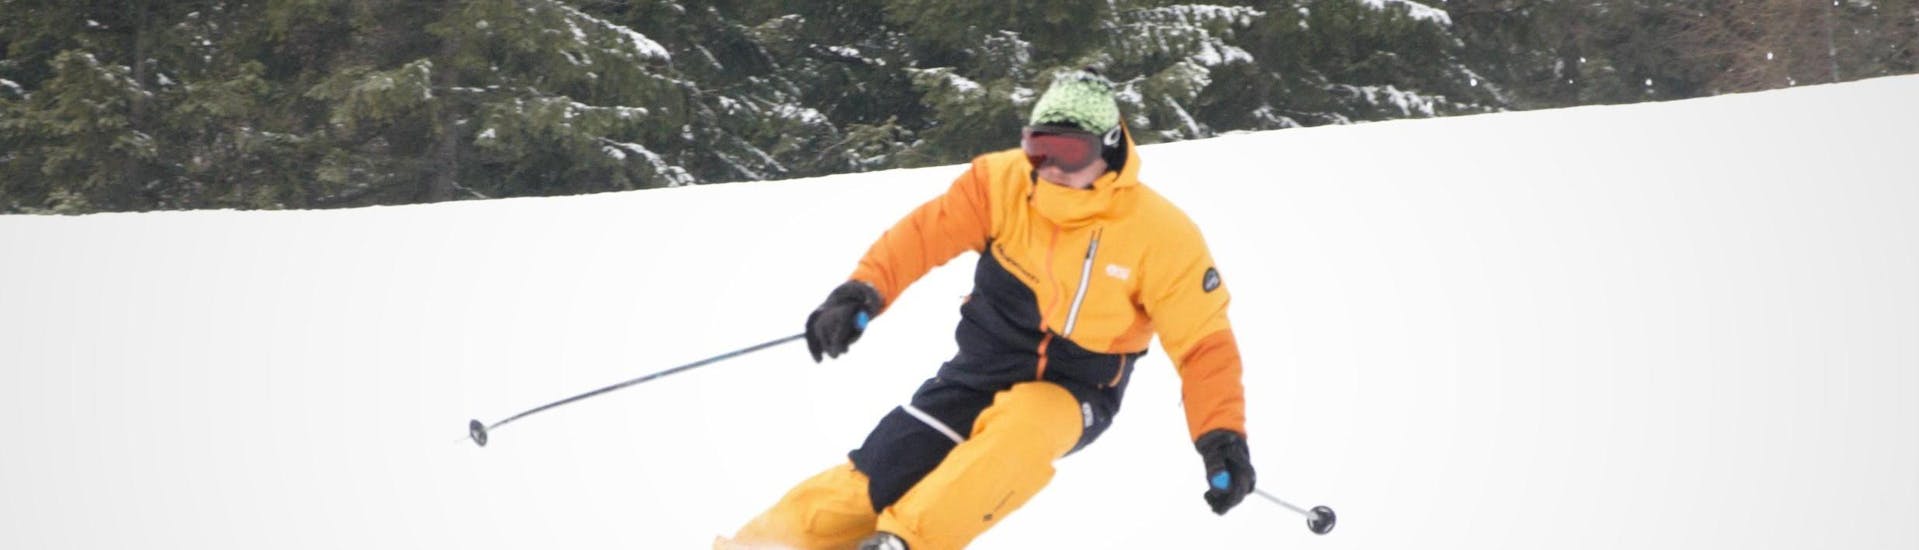 Cours particulier de ski Adultes dès 15 ans pour Tous niveaux.